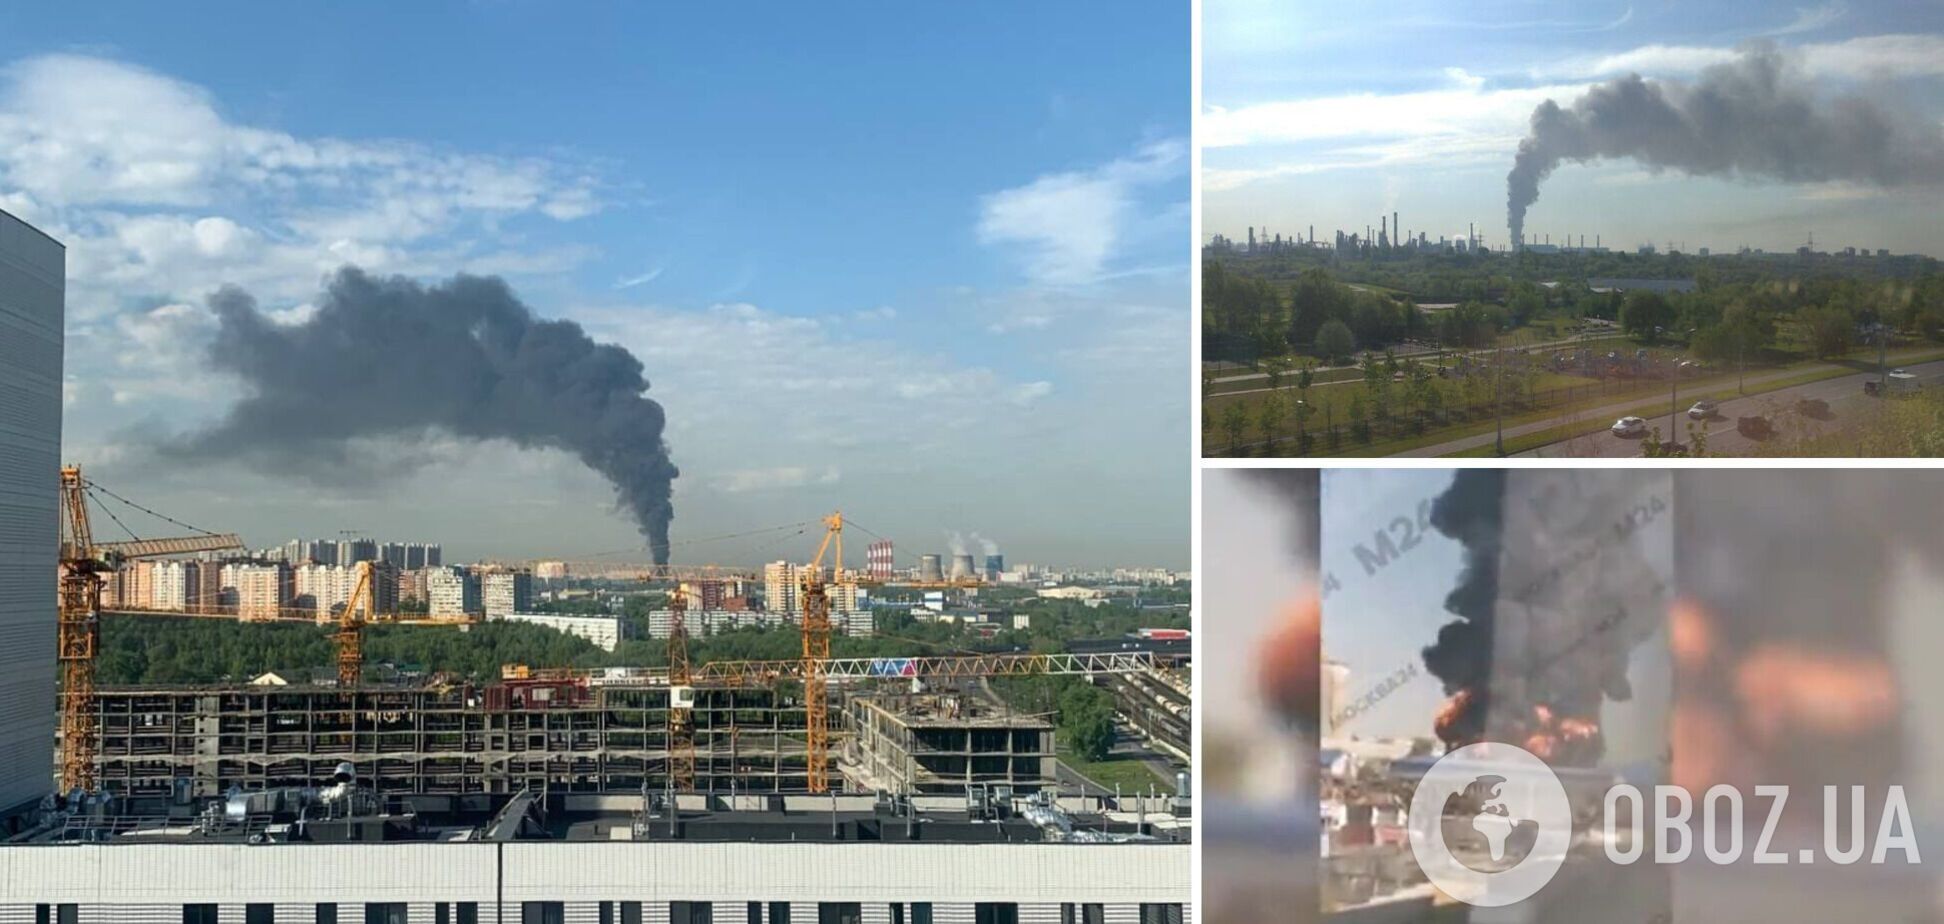 Піднявся стовп вогню і чорного диму: під Москвою спалахнула потужна пожежа. Фото і відео